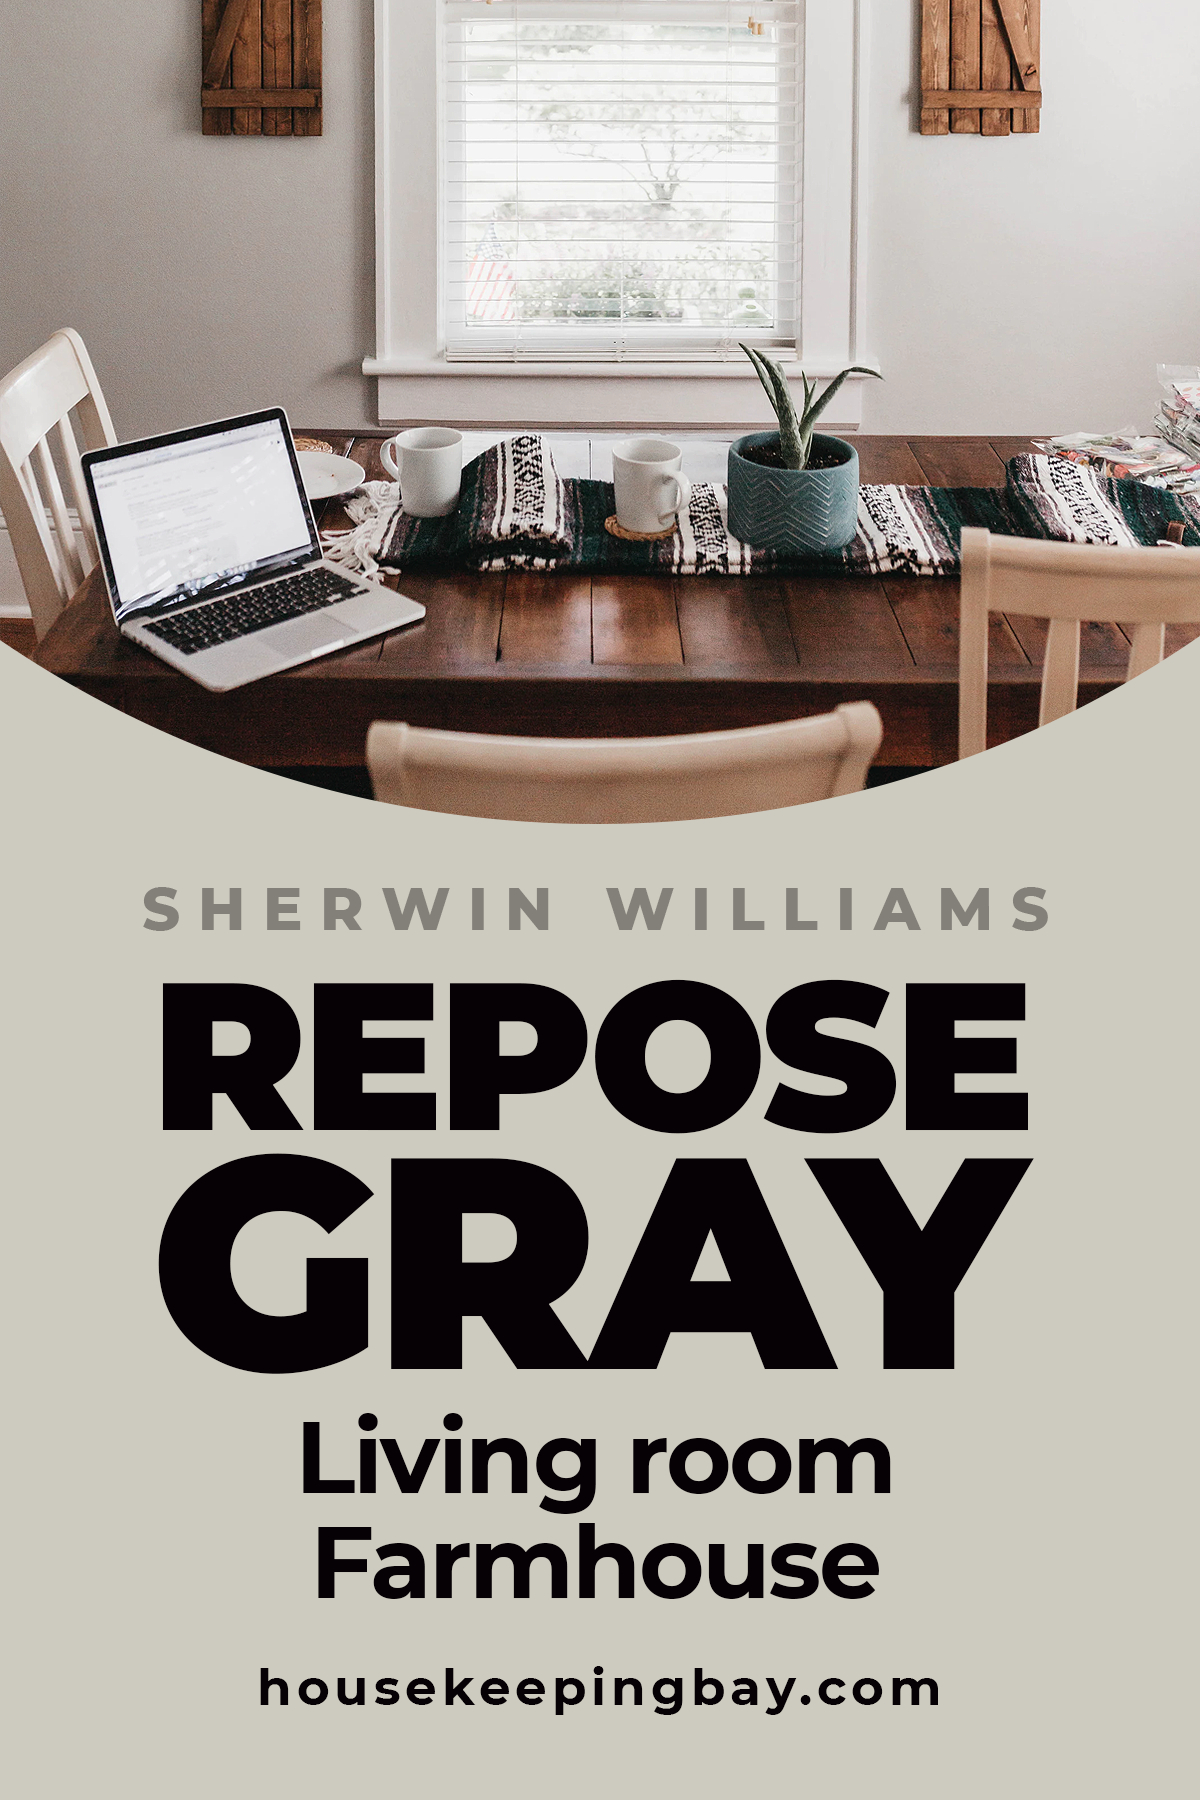 Repose Gray living room Farmhouse